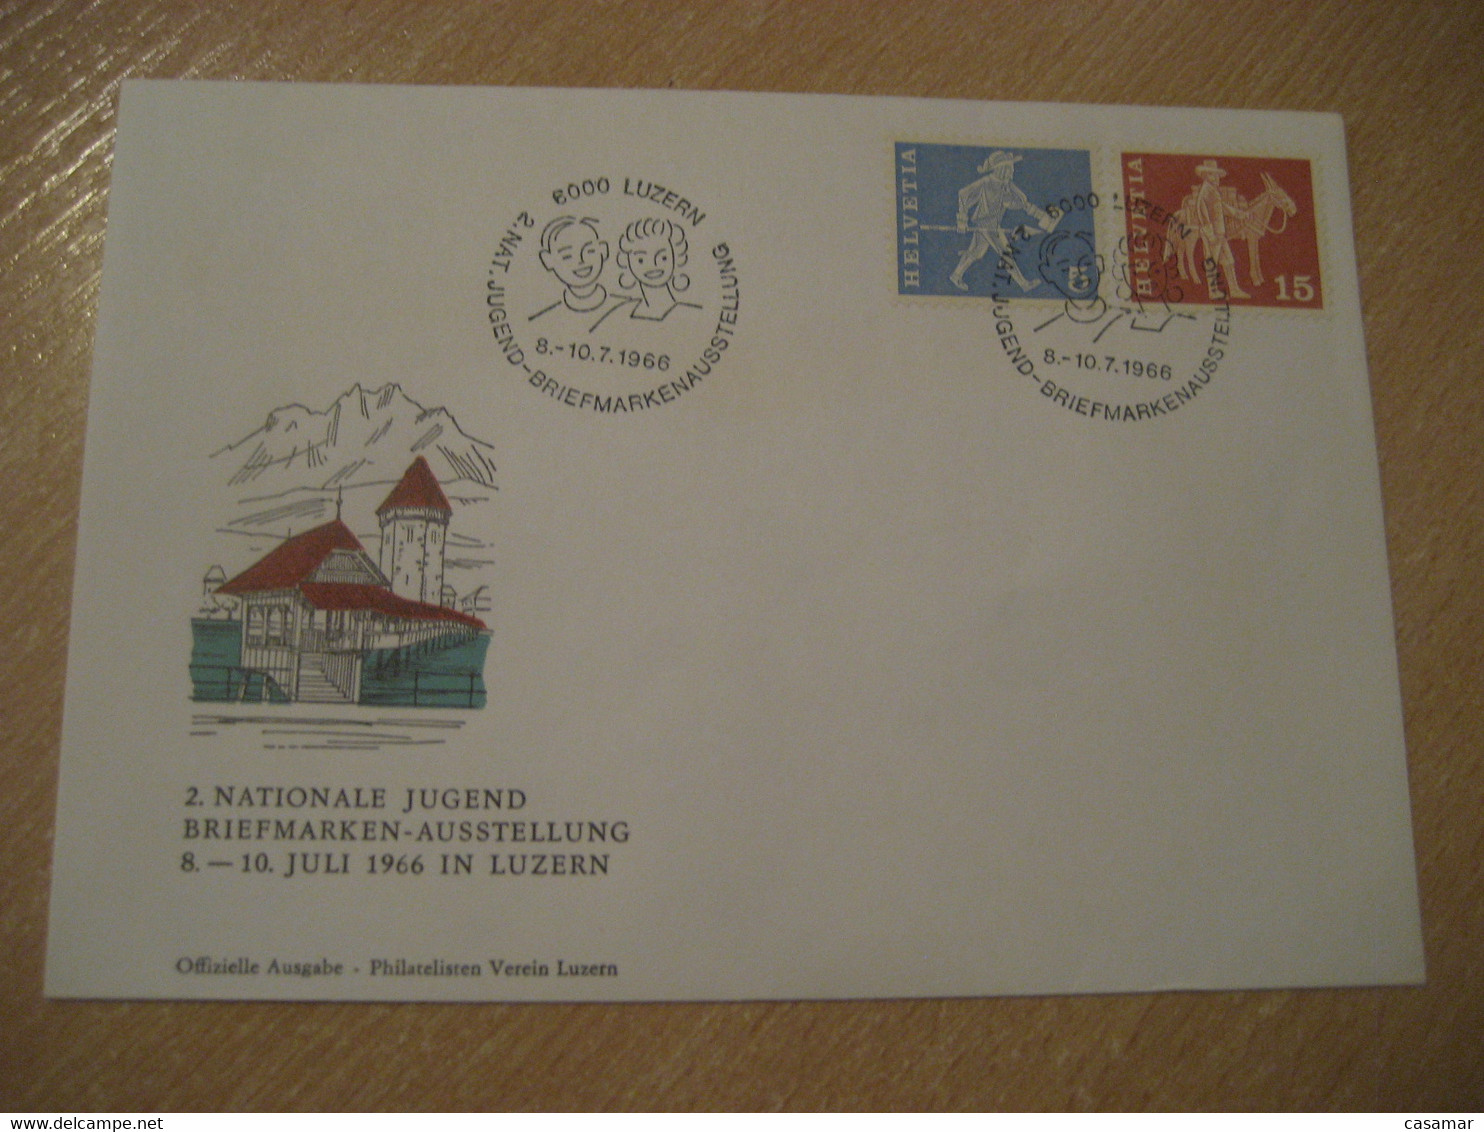 LUZERN 1966 Donkey Donkeys Stamp Jugend Briefmarken Cancel Bridge Water Tower Cover SWITZERLAND Lucerne - Asini